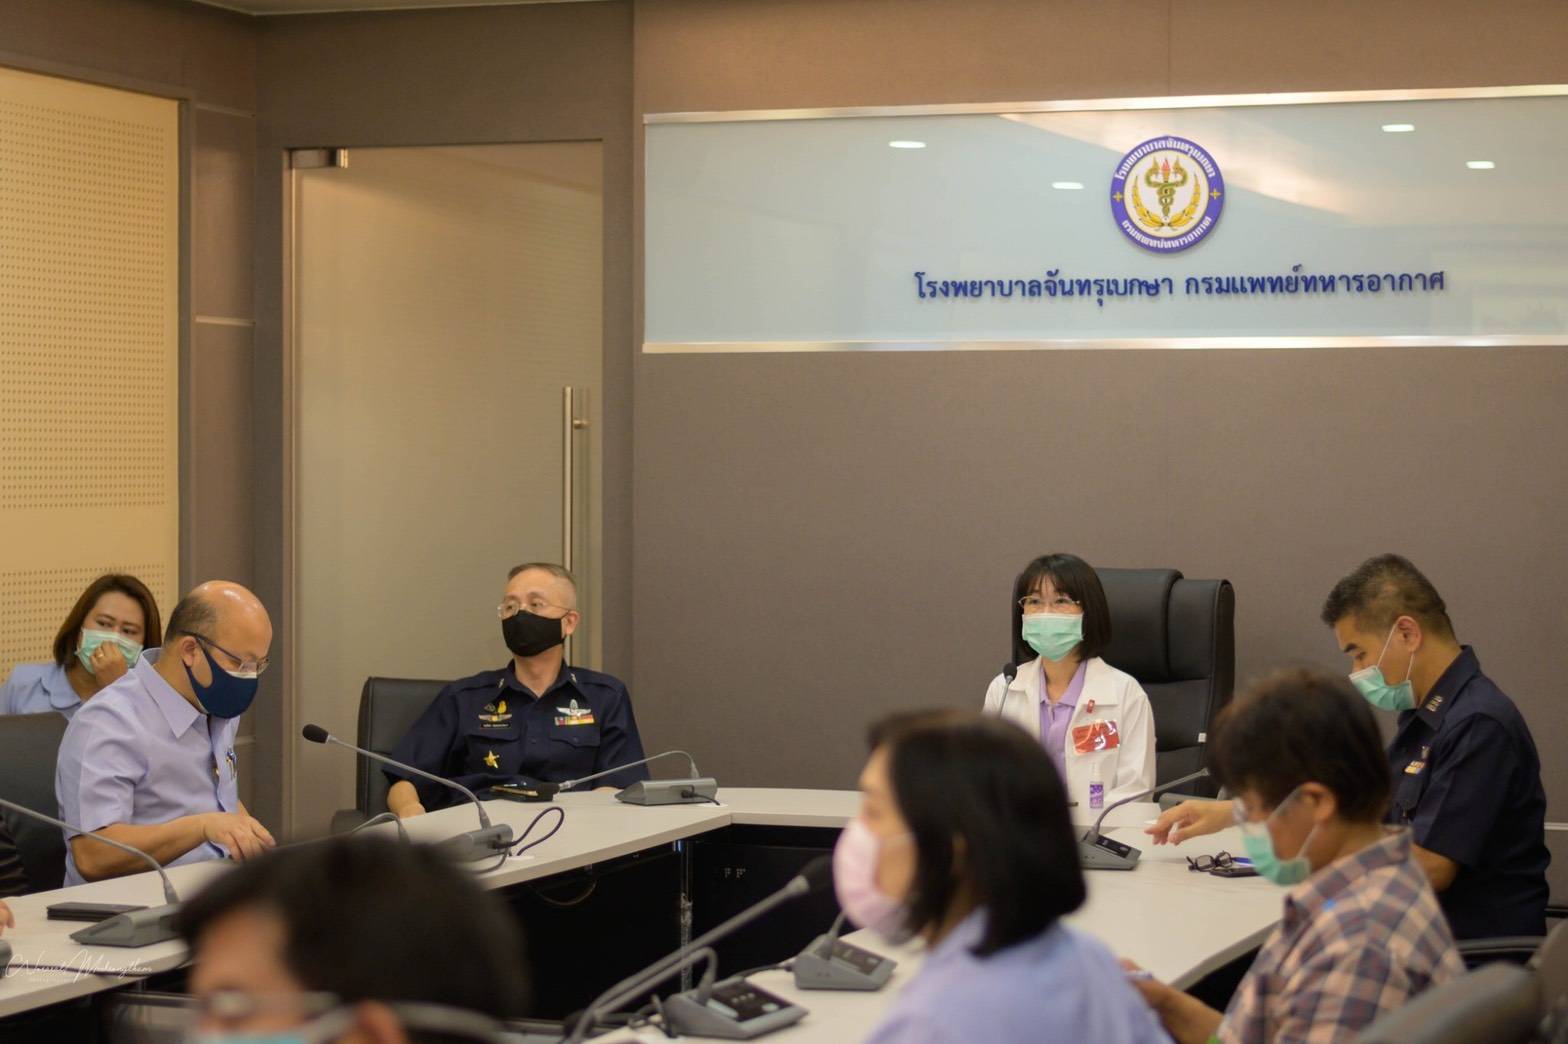 ผู้ตรวจราชการกระทรวงสาธารณสุข เขตสุขภาพที่5 ร่วมในพิธีส่งตัวกลับภูมิลำเนาและให้กำลังใจ 75 ผู้เข้ารับการกักตัว State Quarantine ณ ศูนย์ประสานงานดูแลคนไทยในพื้นที่เฝ้าระวังโรค COVID-19 โรงเรียนการบินกำแพงแสน ทุกคนแจ่มใส มีอาการปกติ ตรวจไม่พบเชื้อไวรัส COVID-19